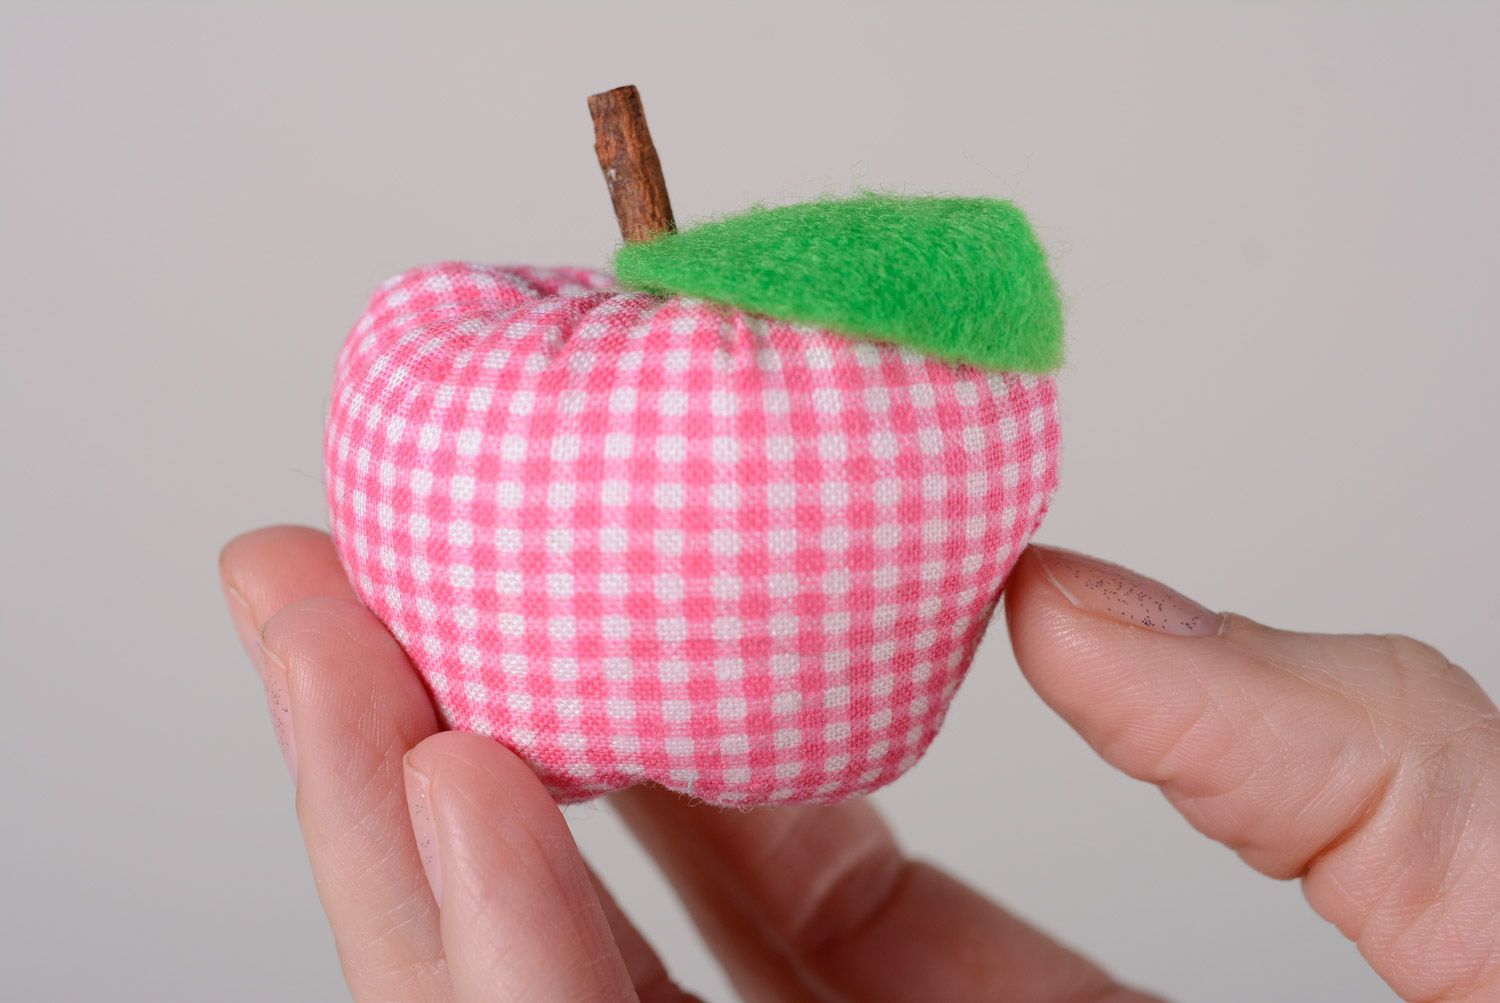 Декоративная игрушка для интерьера в виде маленького яблока мягкая пошитая вручную фото 3